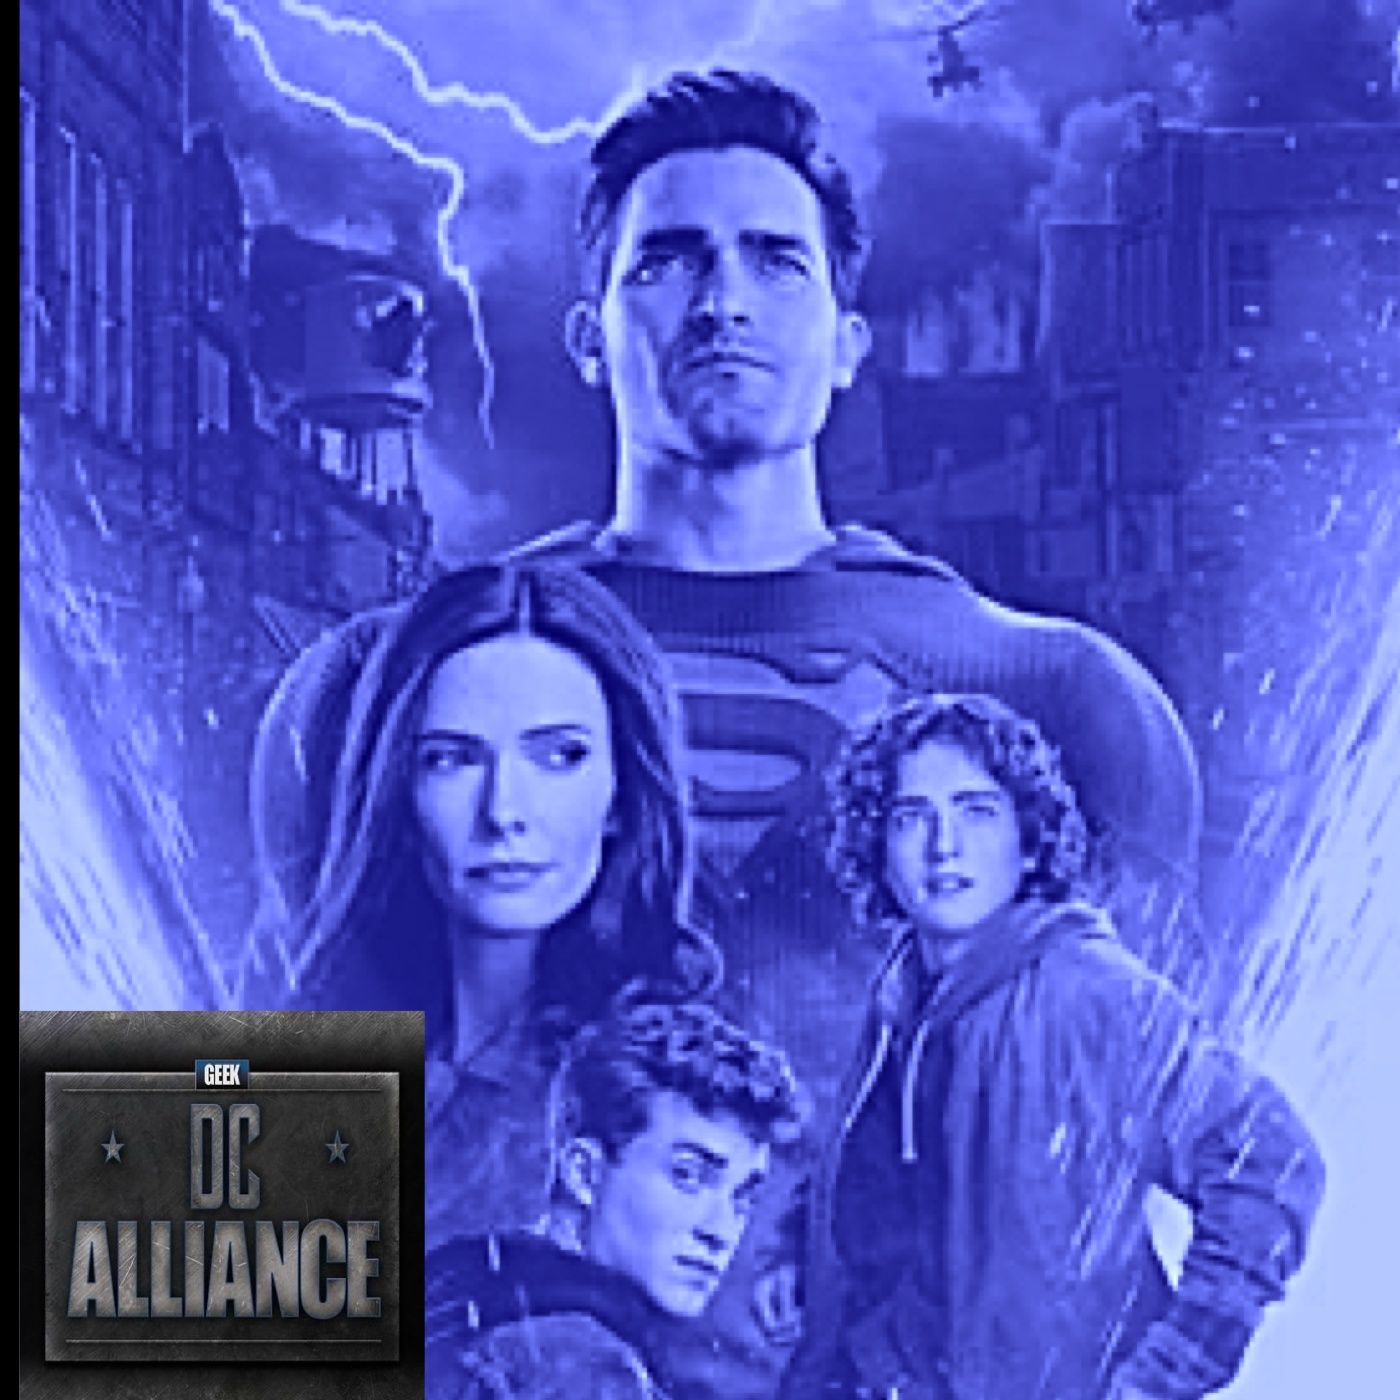 Superman & Lois 2x14 Review DC Alliance Ch. 120